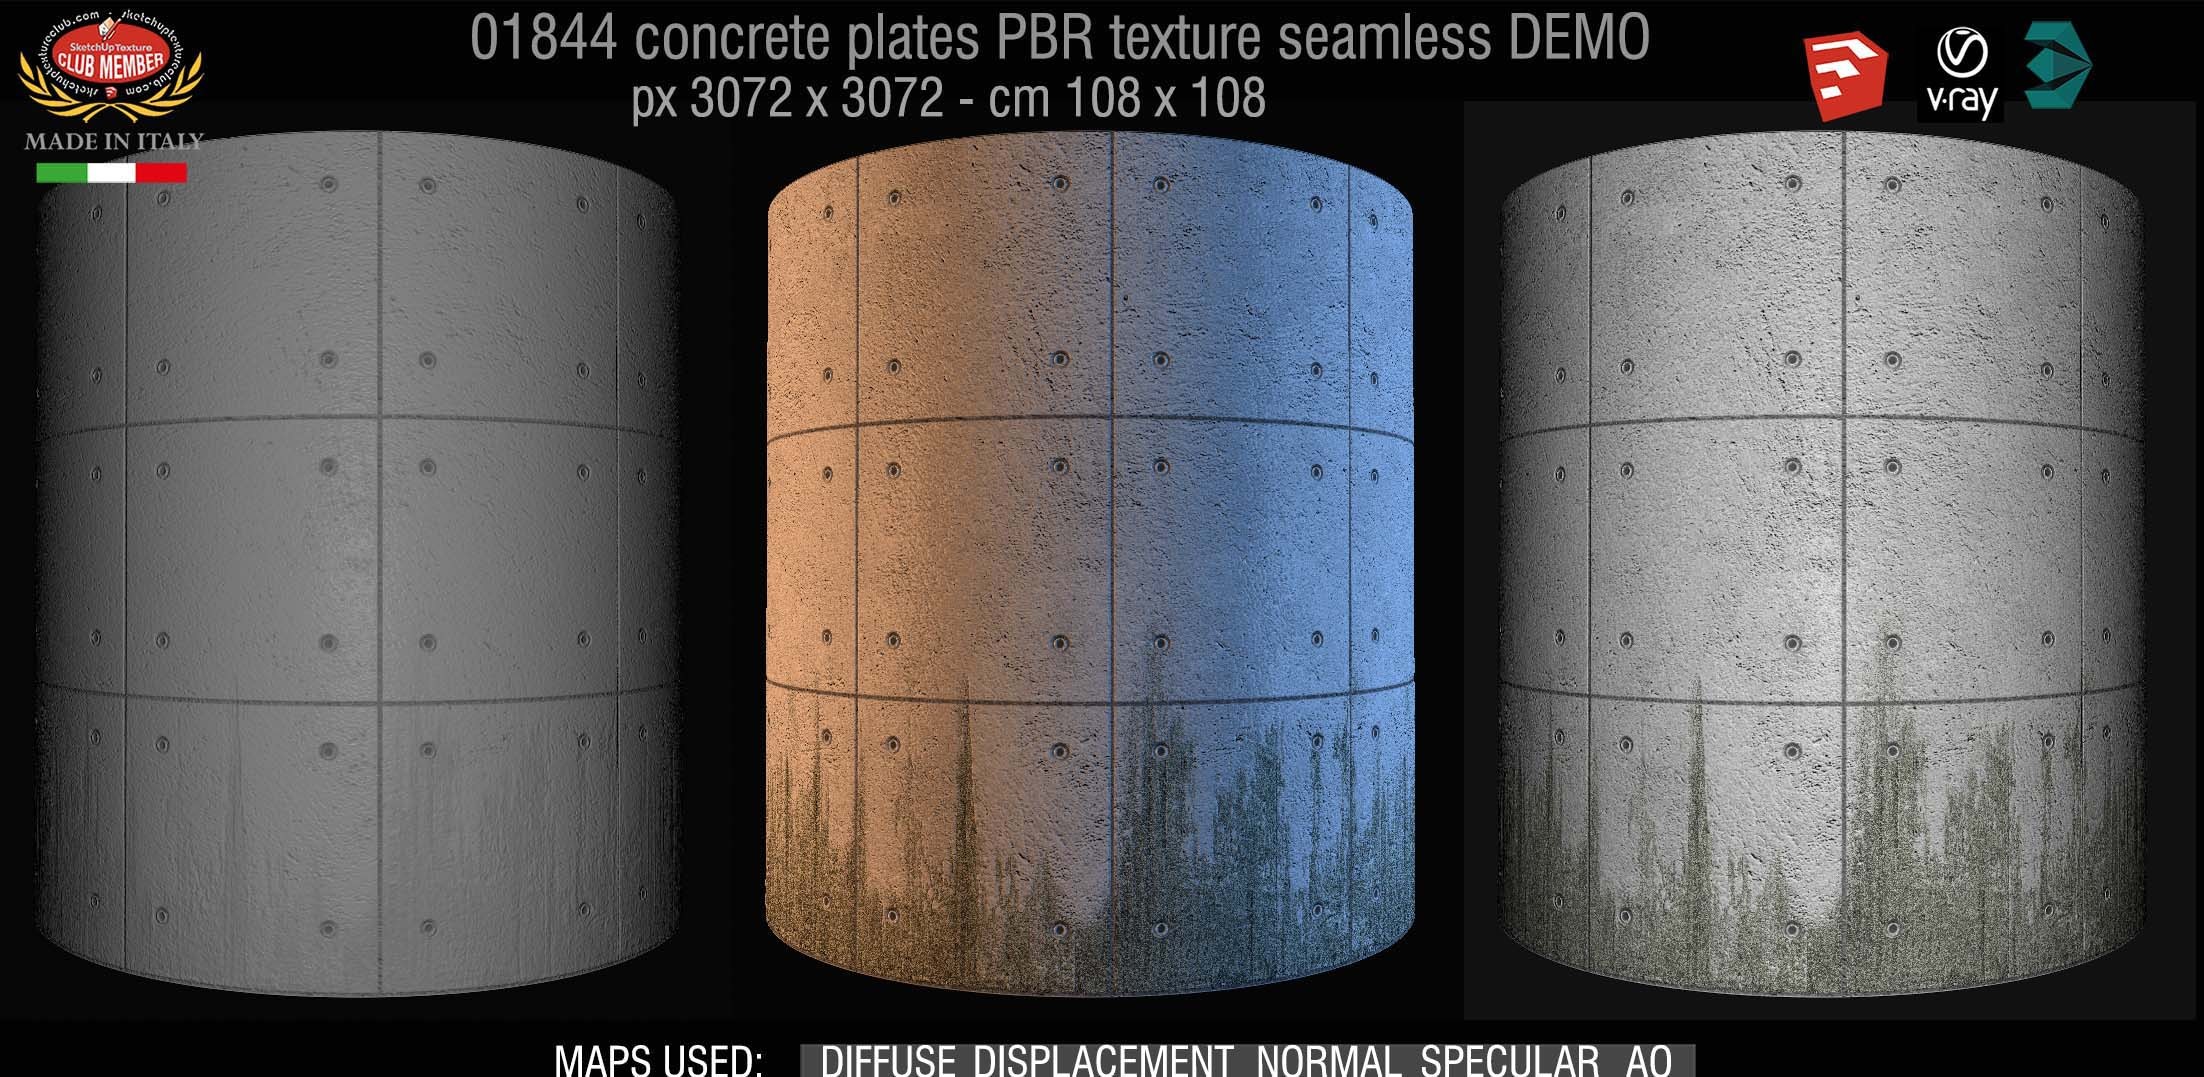 01844 Tadao Ando concrete plates PBR texture seamless DEMO